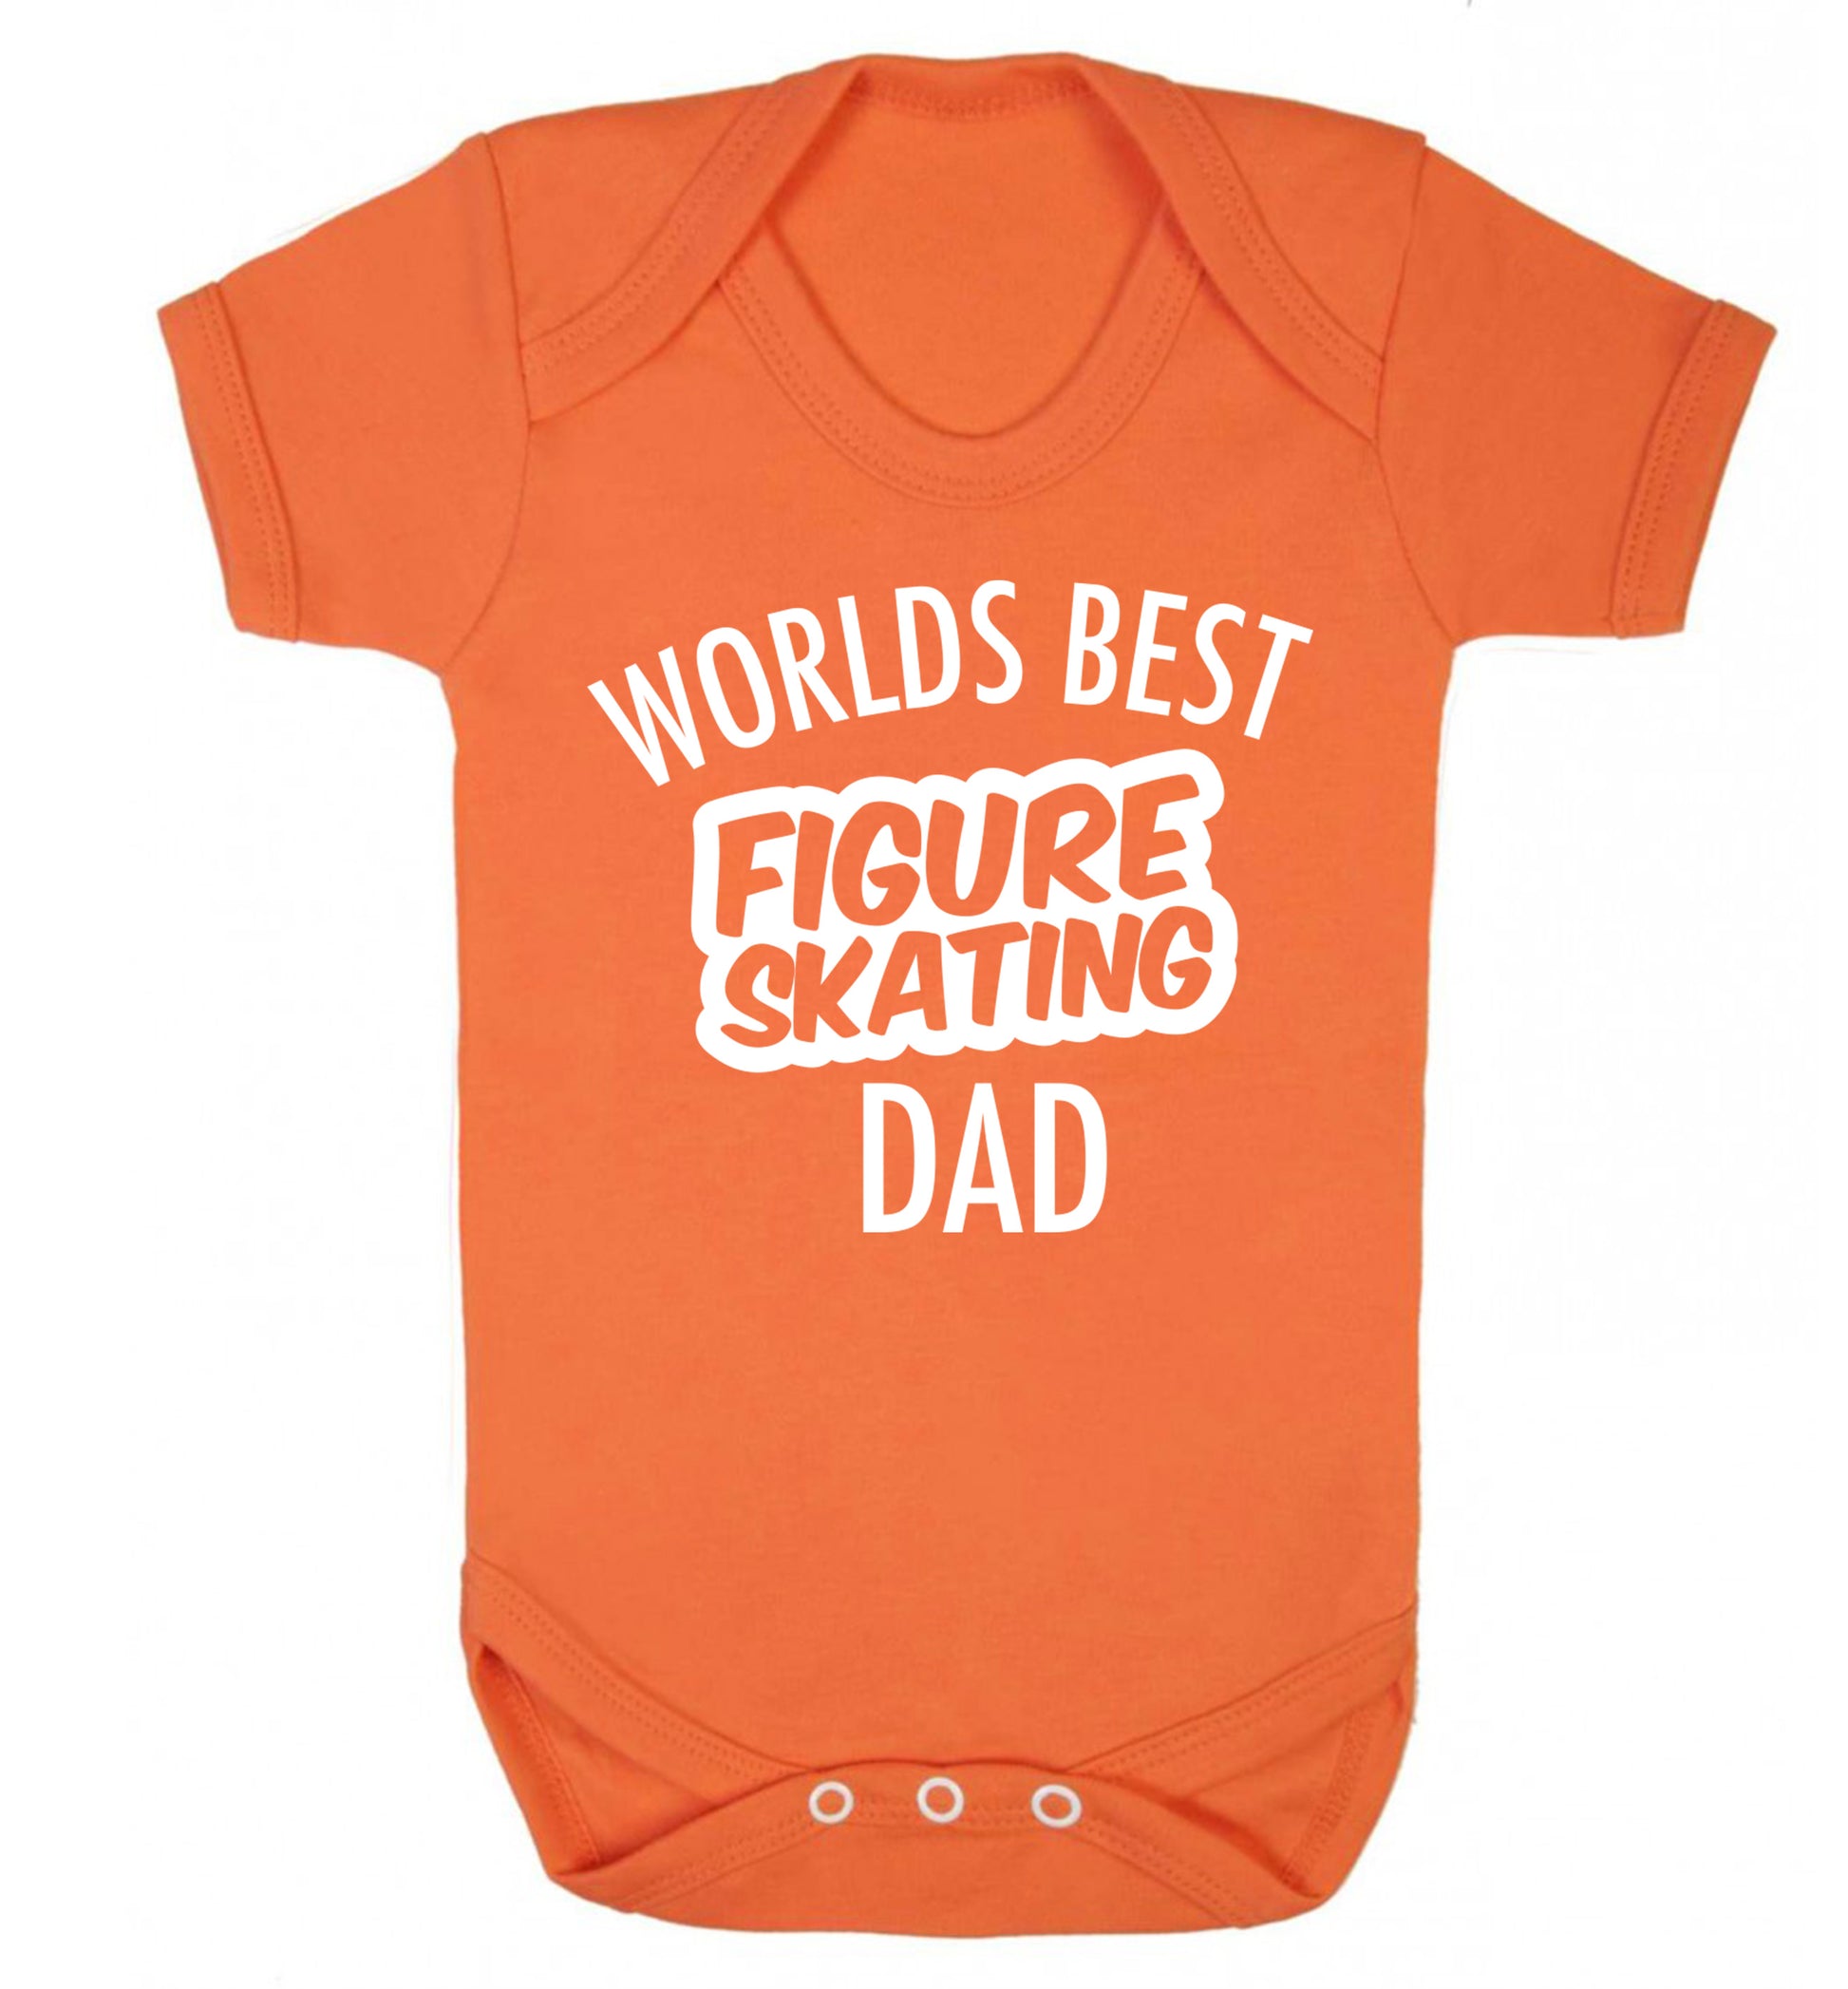 Worlds best figure skating dad Baby Vest orange 18-24 months